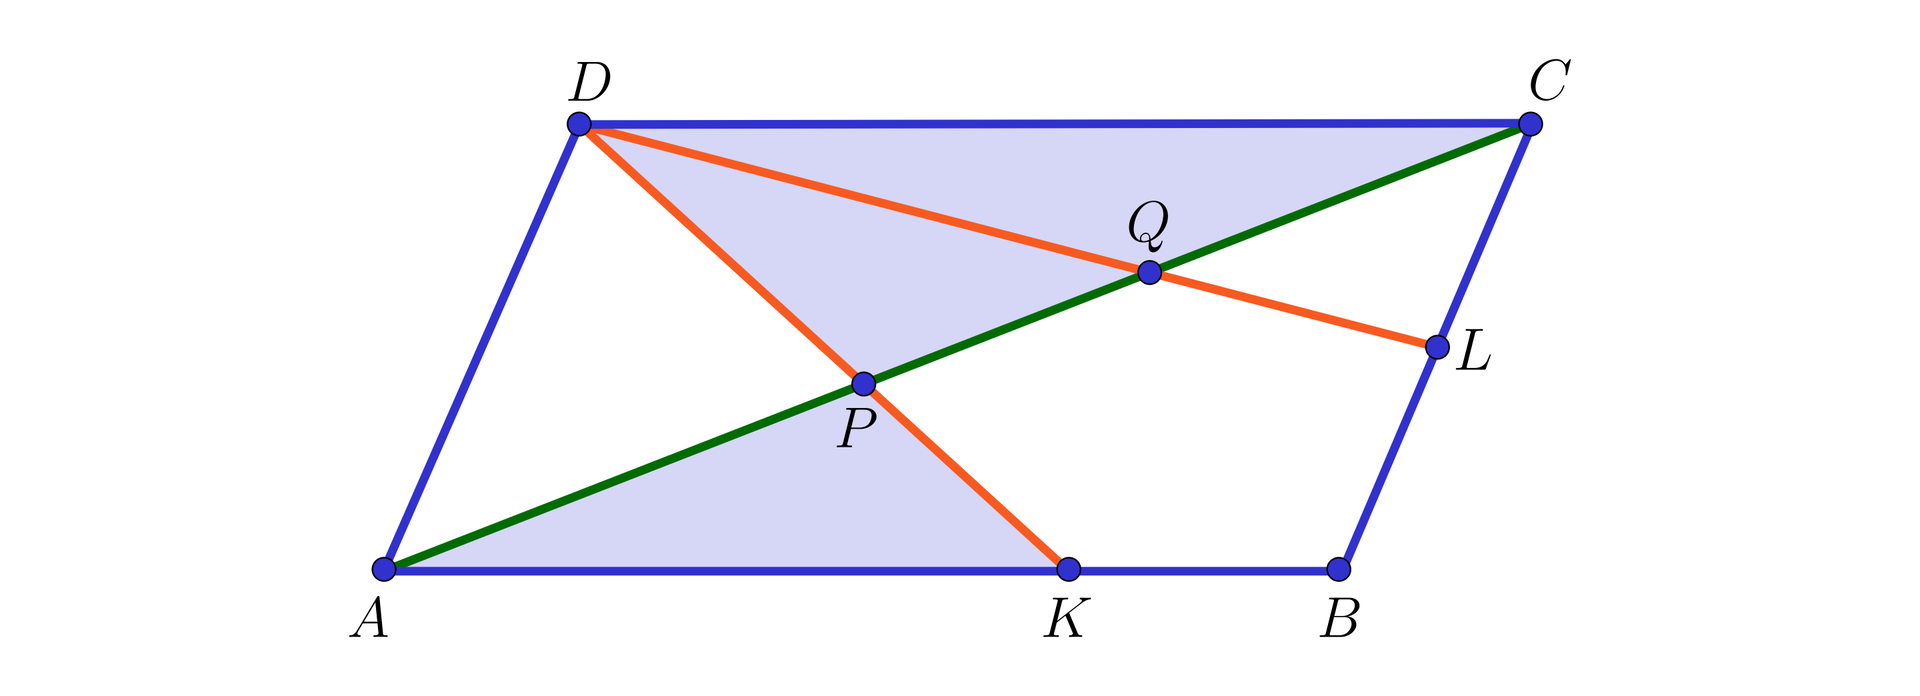 Na ilustracji przedstawiono równoległobok ABCD. Zaznaczono punkt L na boku BC, oraz punkt K na boku AB. Pomarańczowym kolorem zaznaczono odcinek łączący wierzchołek D z punktem L, oraz wierzchołek D z punktem K. Kolorem zielonym zaznaczono przekątną AC. Punkt P stanowi miejsce przecięcia przekątnej AC z odcinkiem DK, natomiast punkt Q stanowi miejsce przecięcia przekątnej AC z odcinkiem DL. Kolorem niebieskim zacieniowano pola trójkątów APK, oraz DPC.